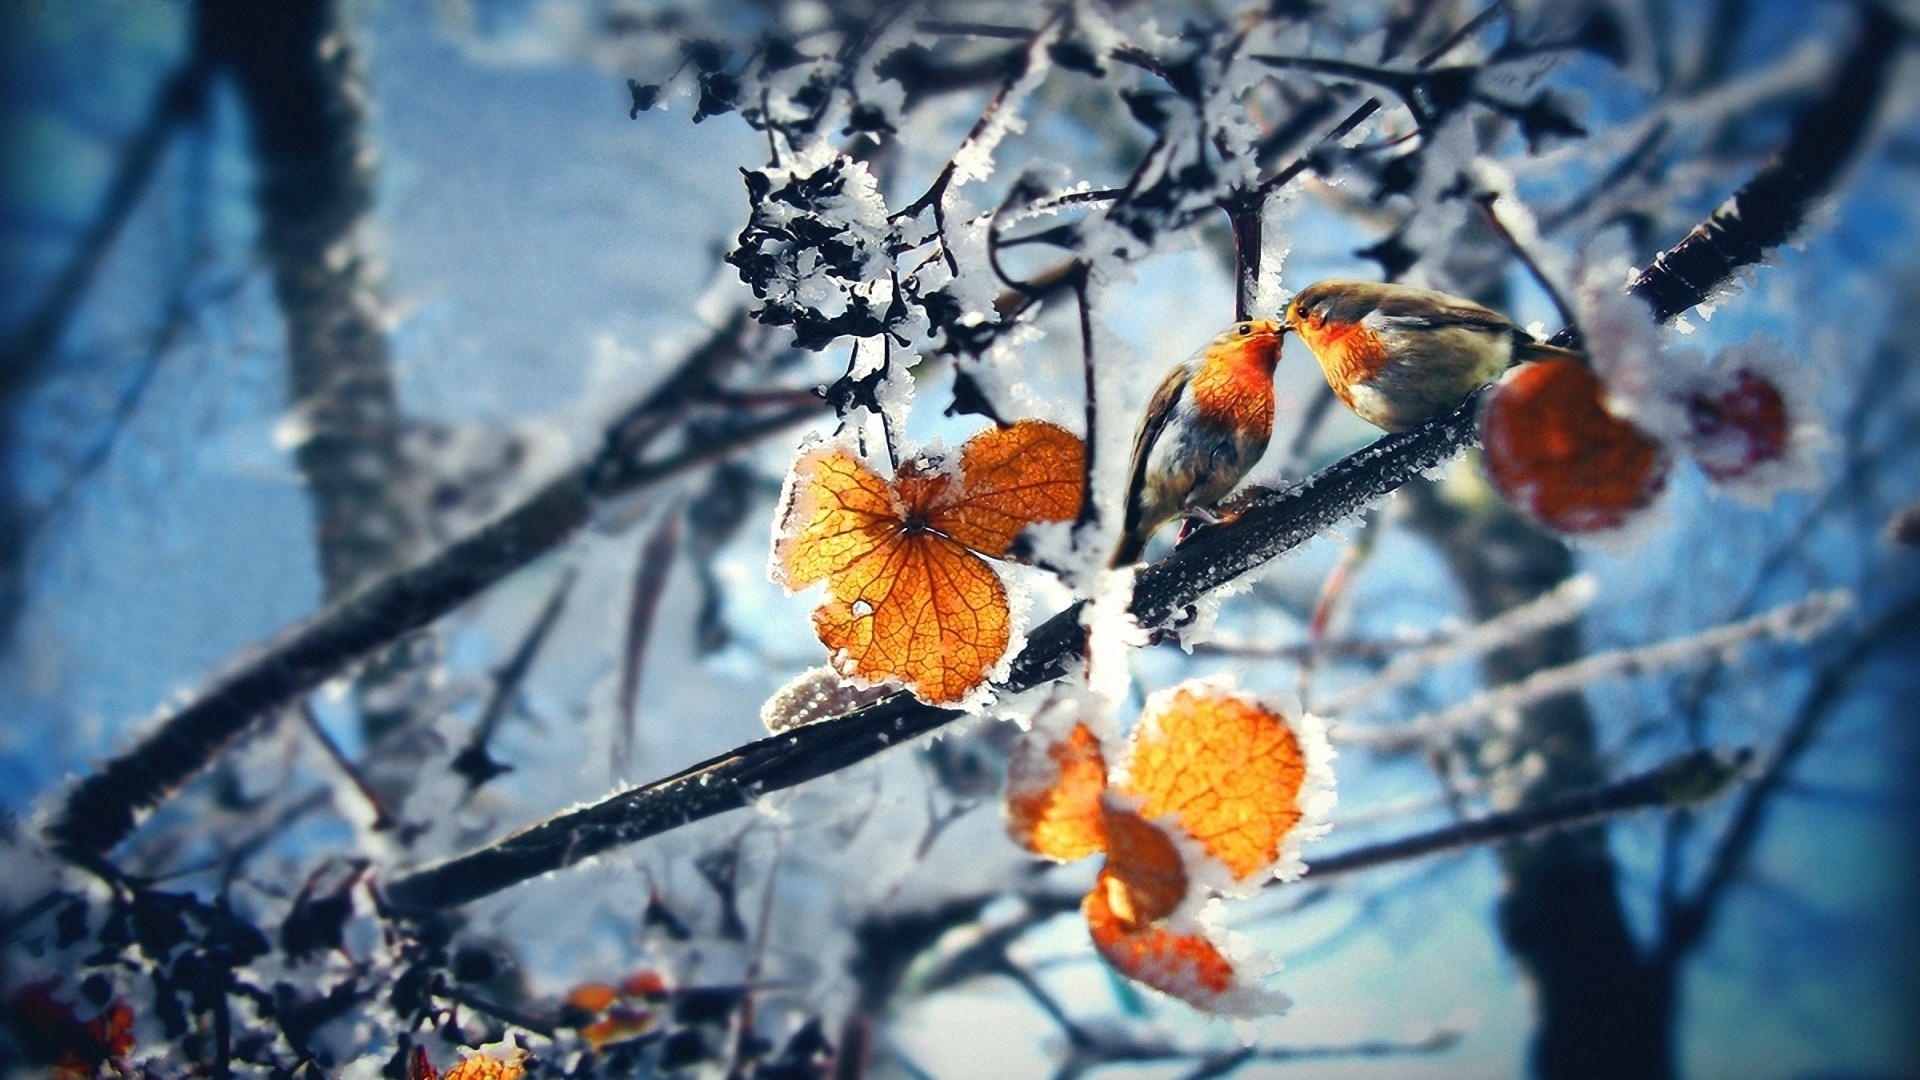 Скачать обои бесплатно Листья, Зима, Пейзаж картинка на рабочий стол ПК